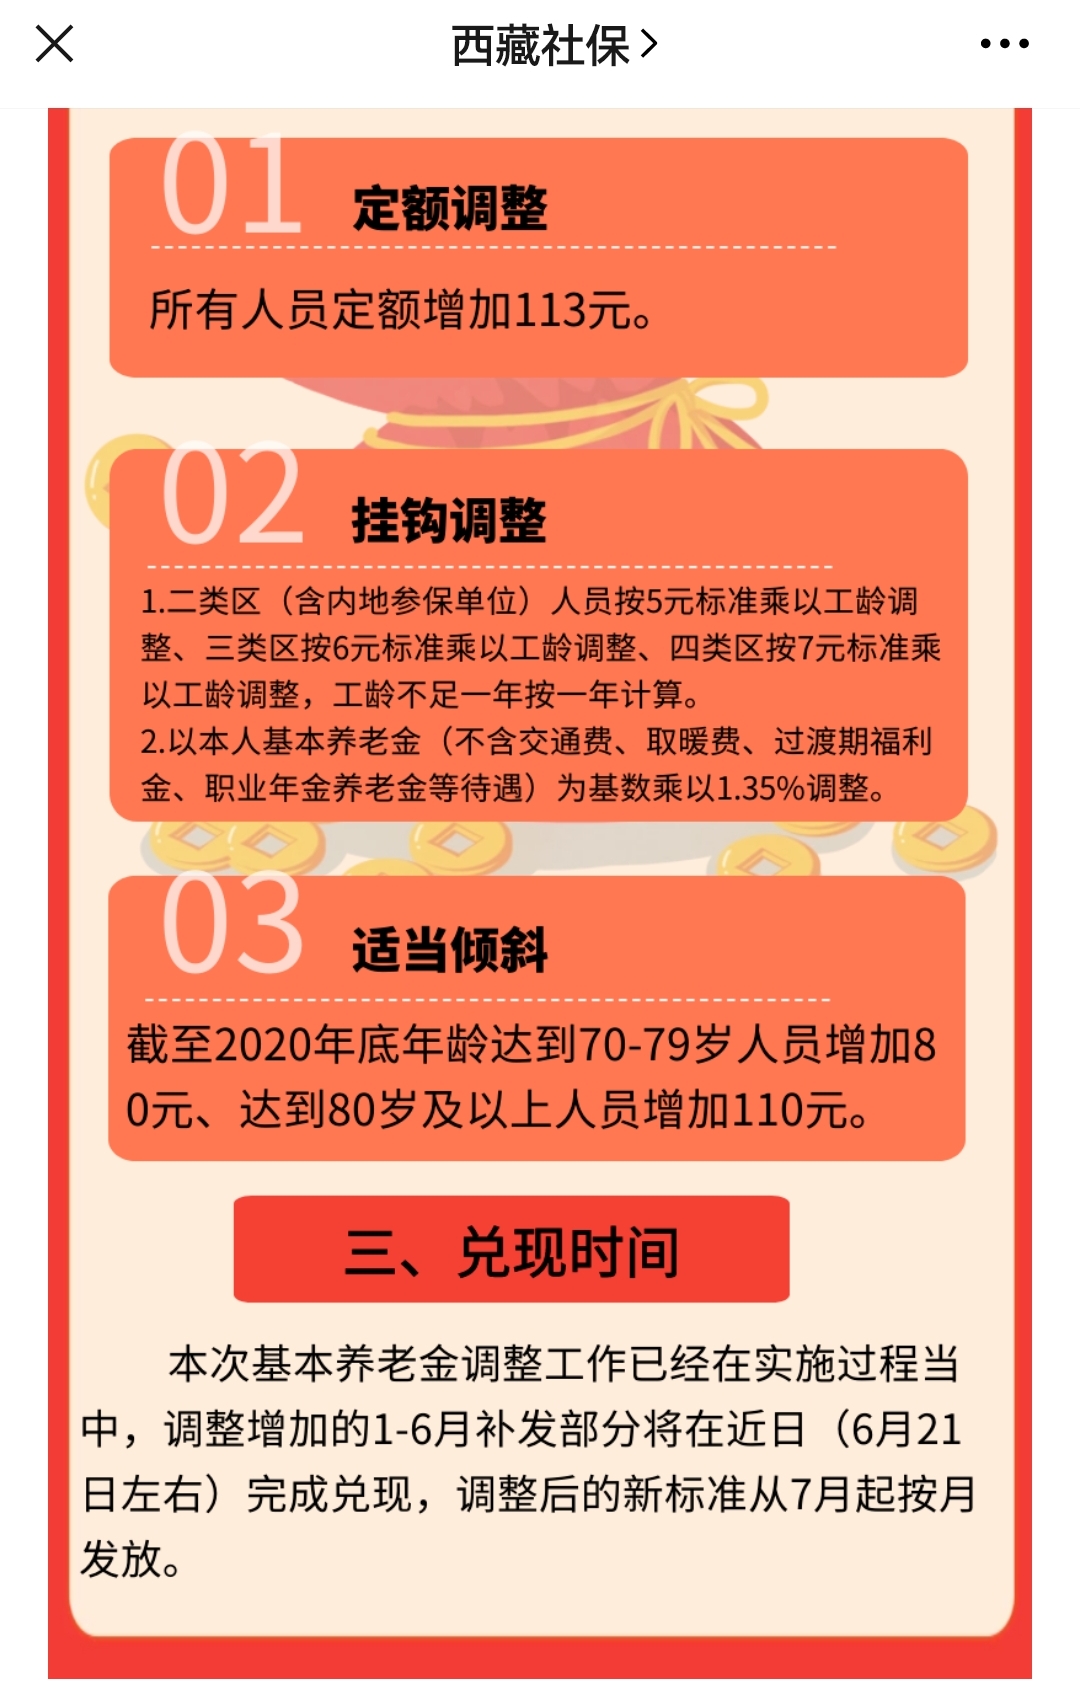 解决方案:邯郸将在河北省率先采用掌静脉采集认证 3